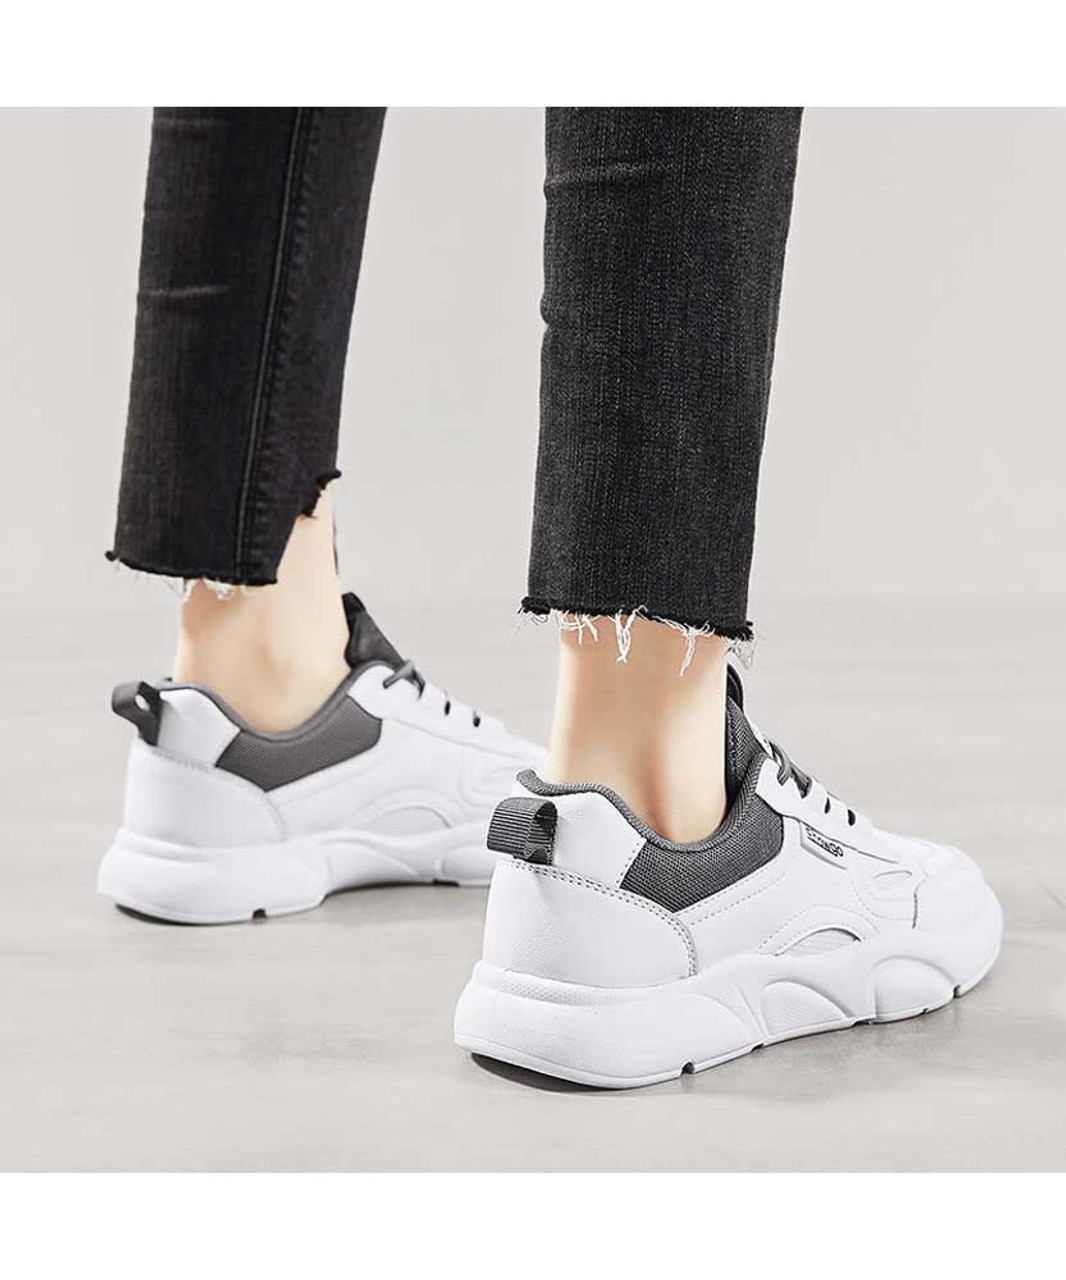 White grey label pattern shoe sneaker | Womens shoe sneakers online 2314WS